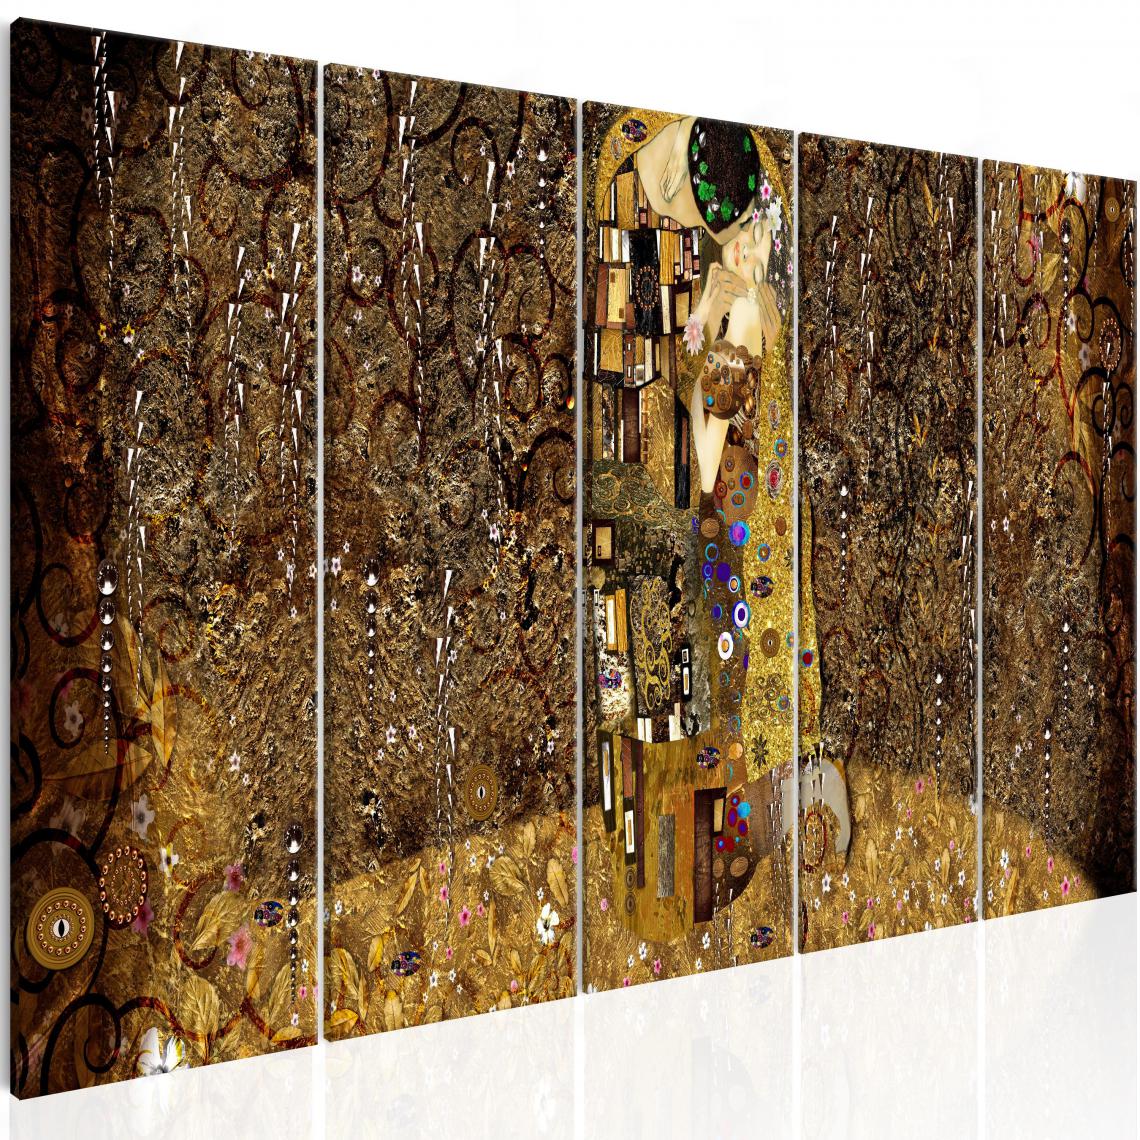 Decoshop26 - Tableau sur toile en 5 panneaux décoration murale image imprimée cadre en bois à suspendre Bisou passionné 200x80 cm 11_0000665 - Tableaux, peintures